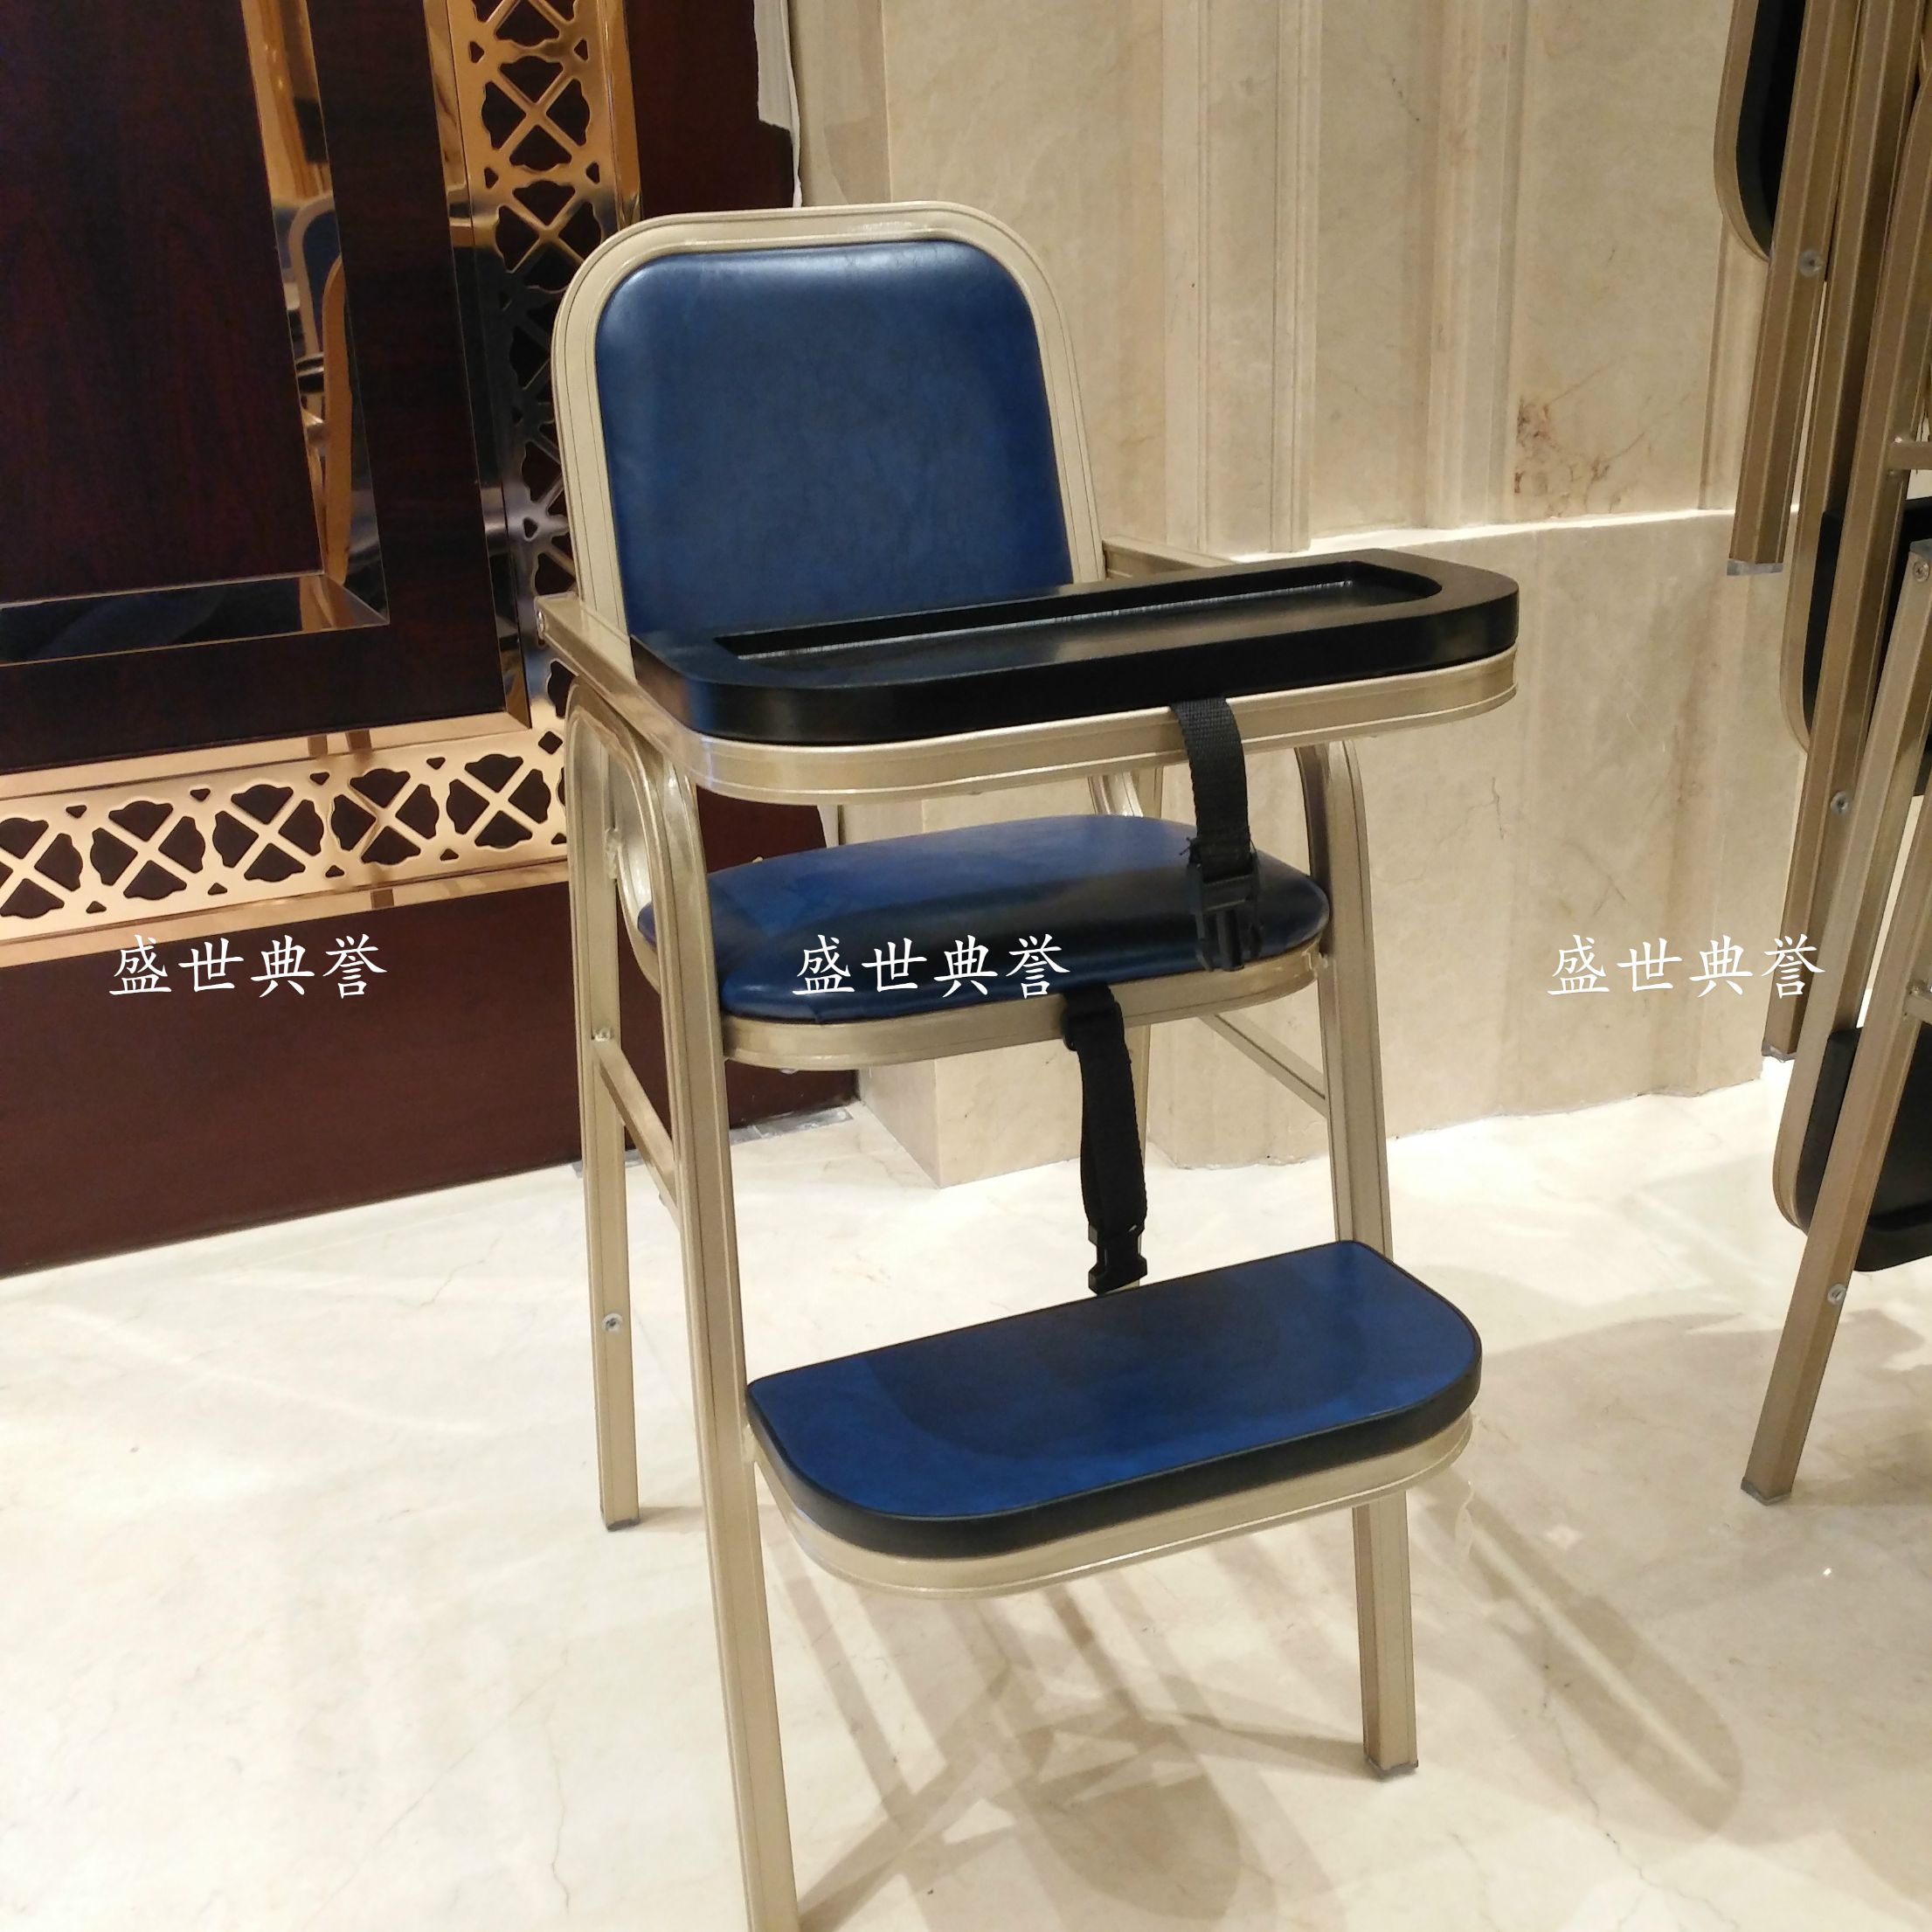 上海五星级酒店宴会厅铝合金宝宝椅 餐厅包厢儿童餐椅 贝贝椅BB椅图